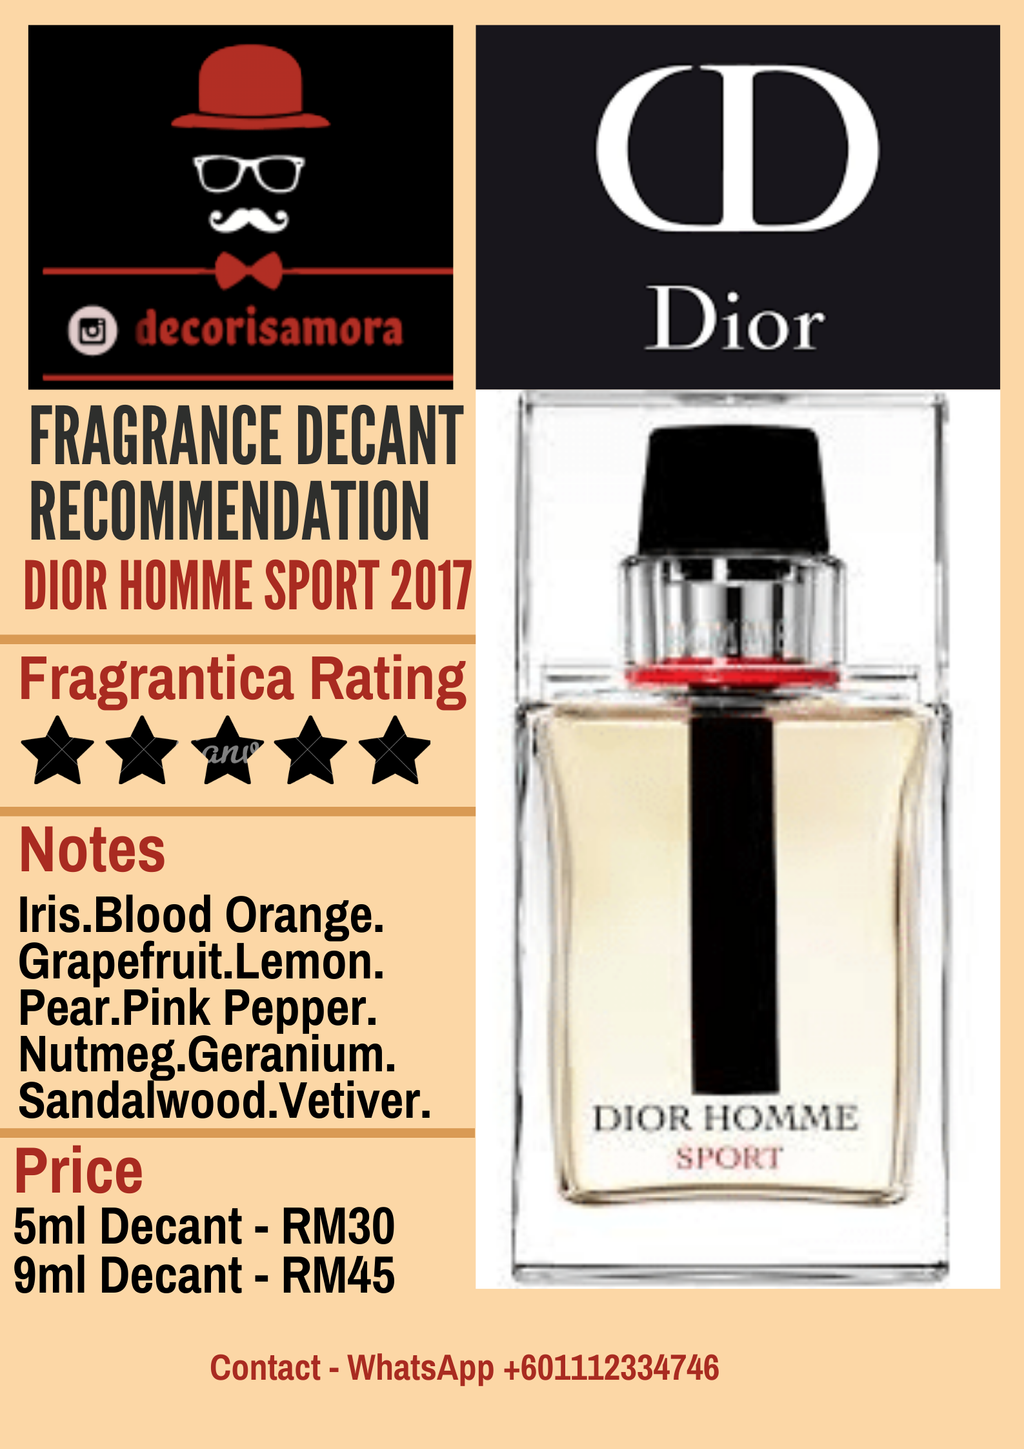 Dior Homme Dior cologne - a fragrance for men 2011